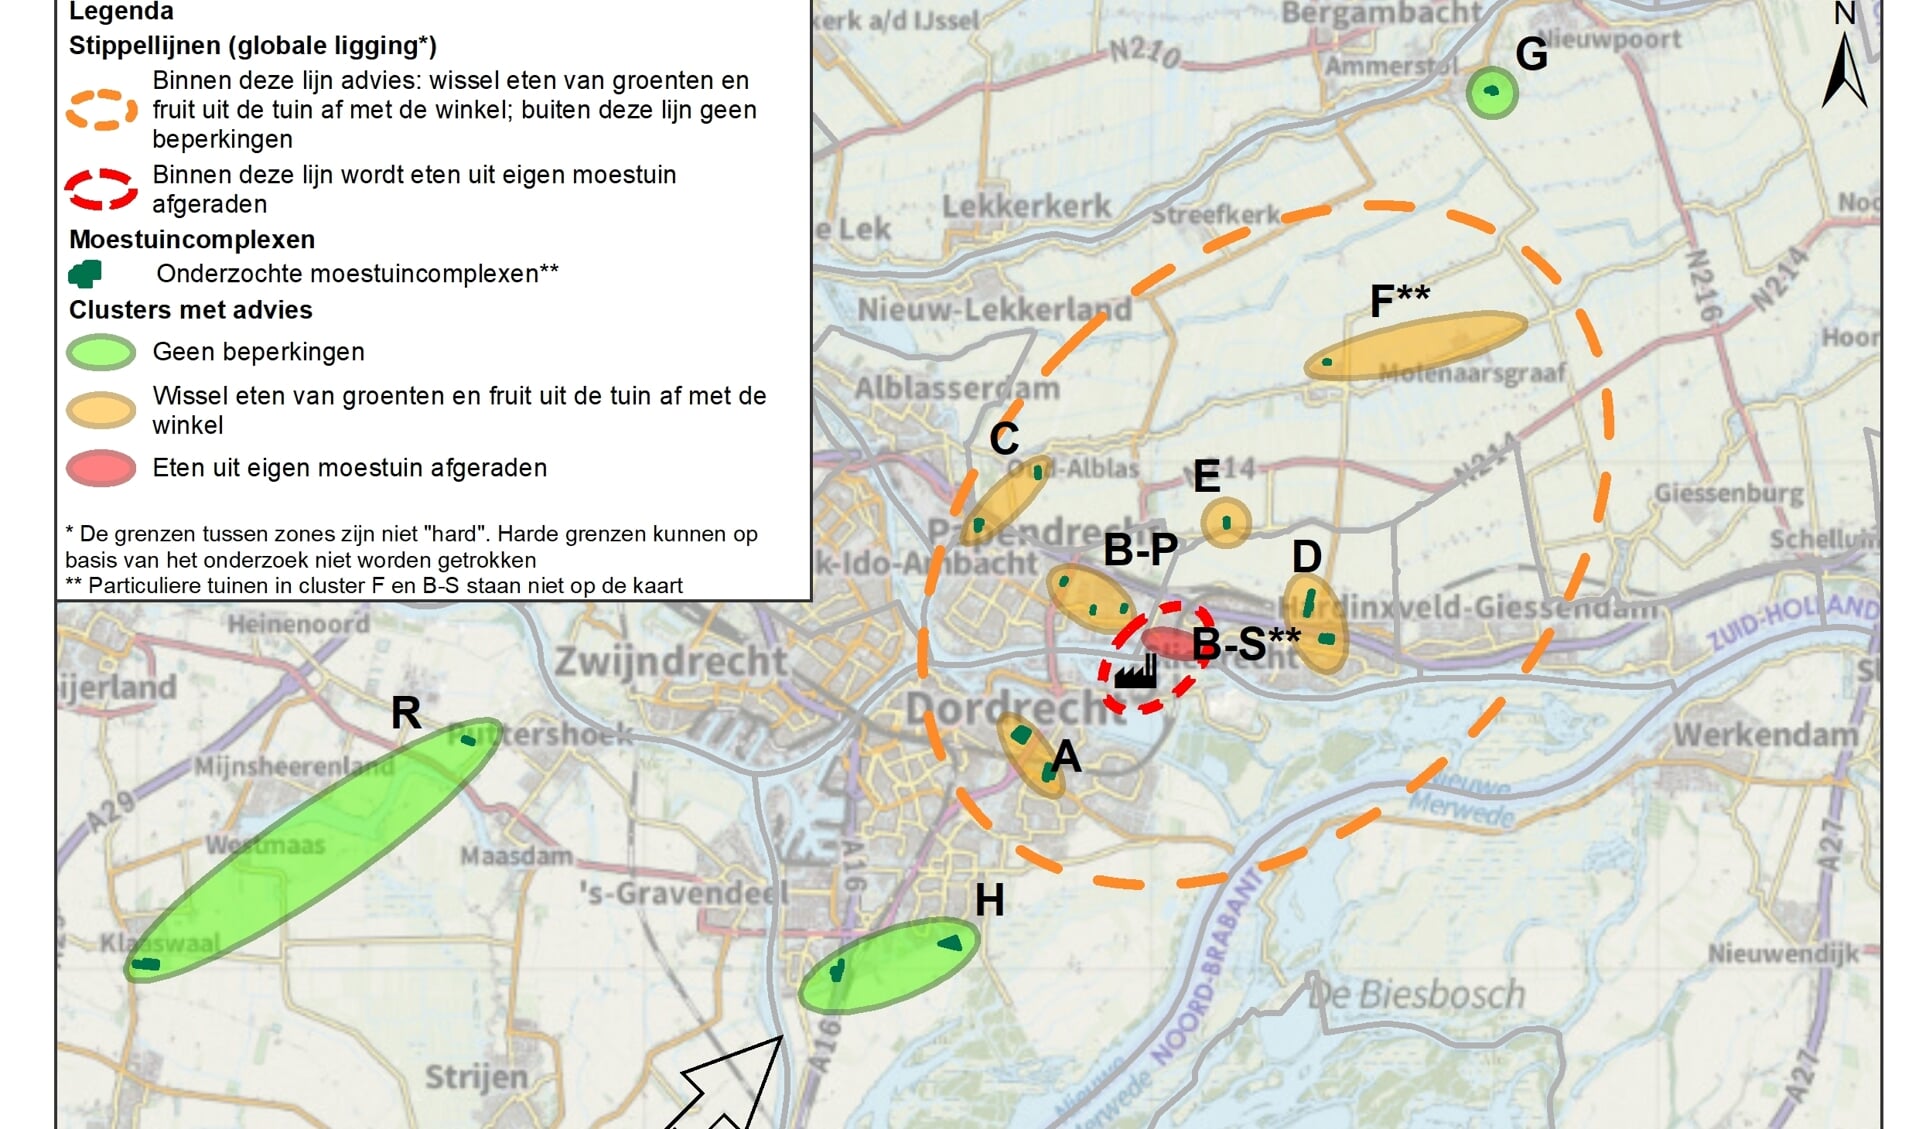 • De kaart met zones en kleuren die aangeven hoe het gesteld is met de PFAS-vervuiling in moestuinen.